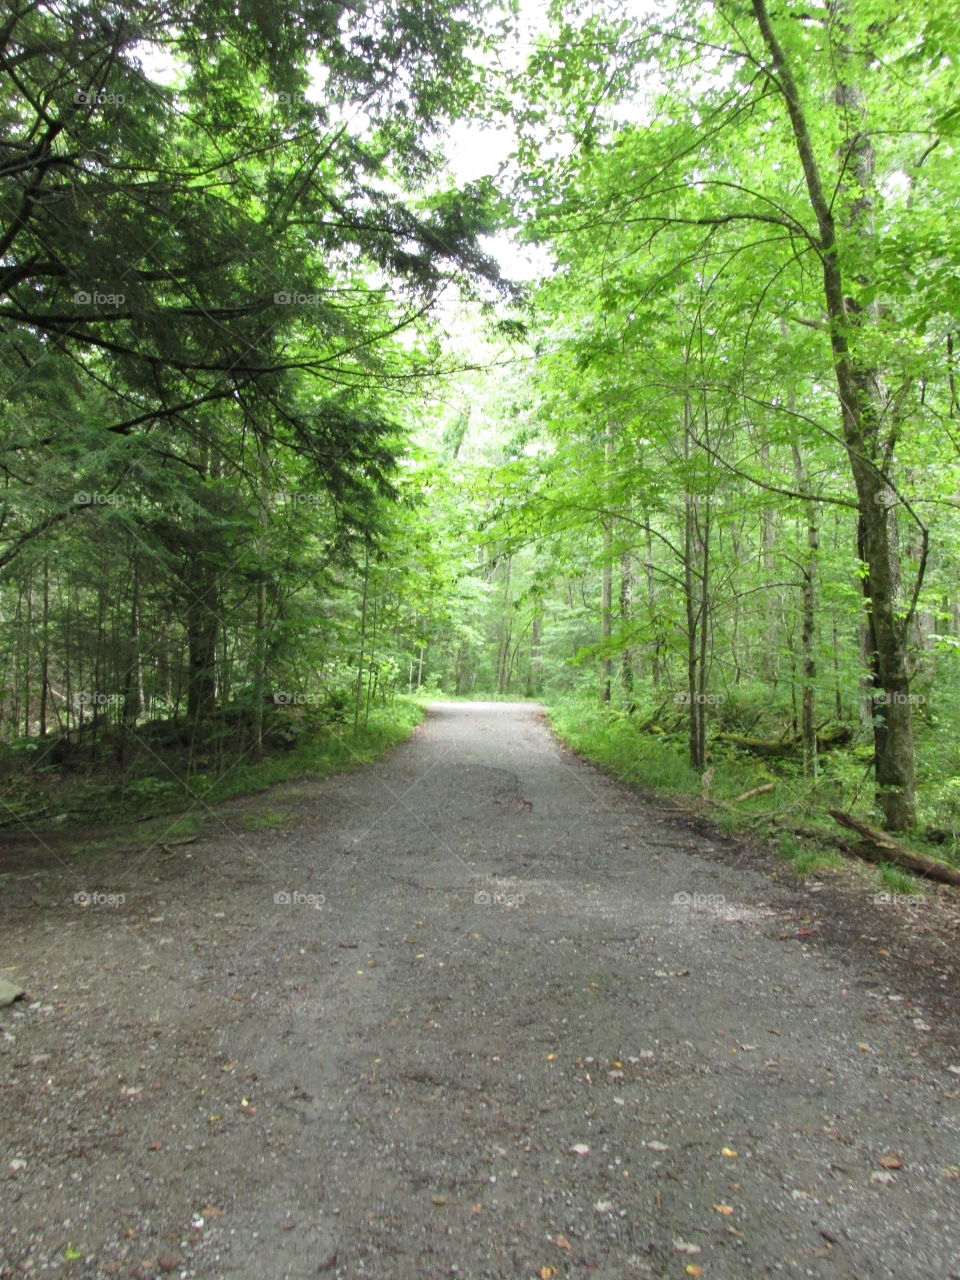 Road, Landscape, Wood, Guidance, Tree